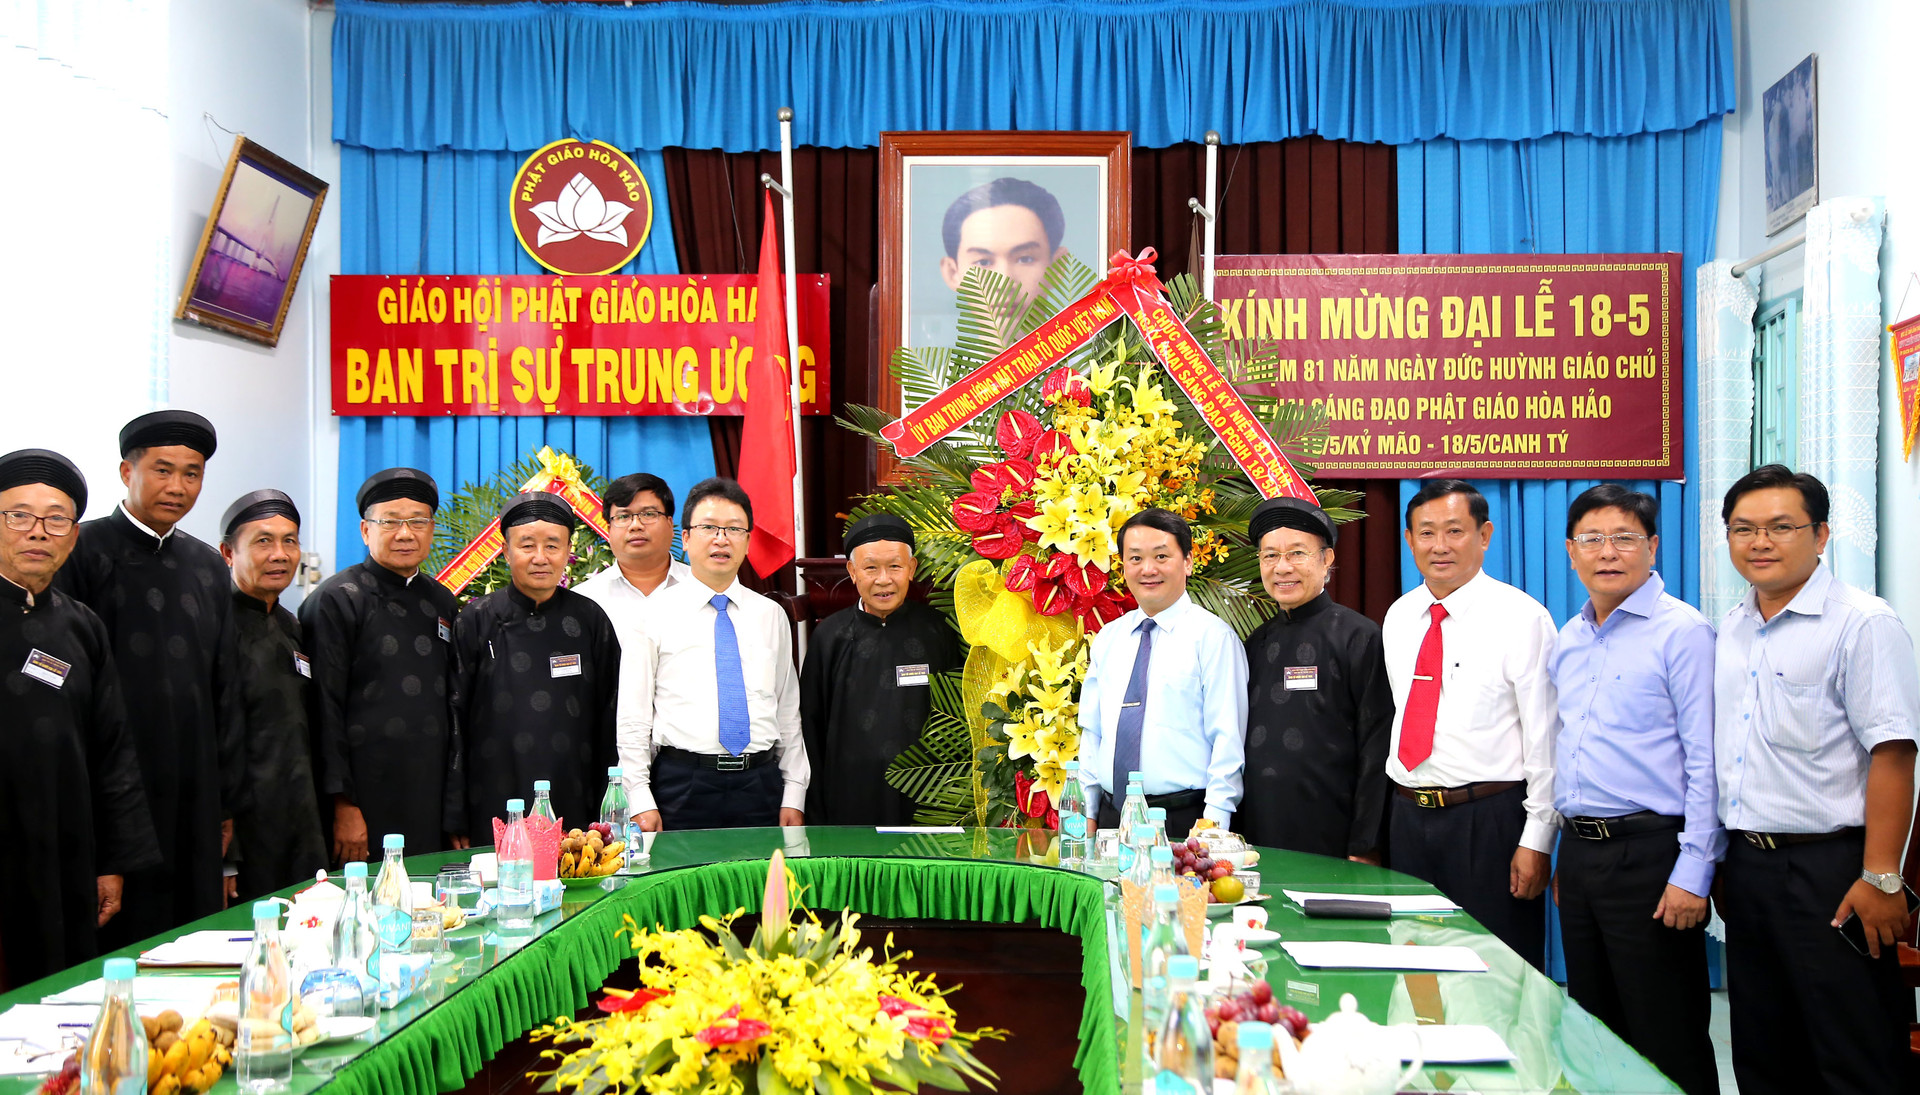 Phó Chủ tịch – Tổng thư ký Hầu A Lềnh tặng hoa chúc mừng đại lễ, chụp ảnh lưu niệm cùng Ban trị sự Trunhg ương 